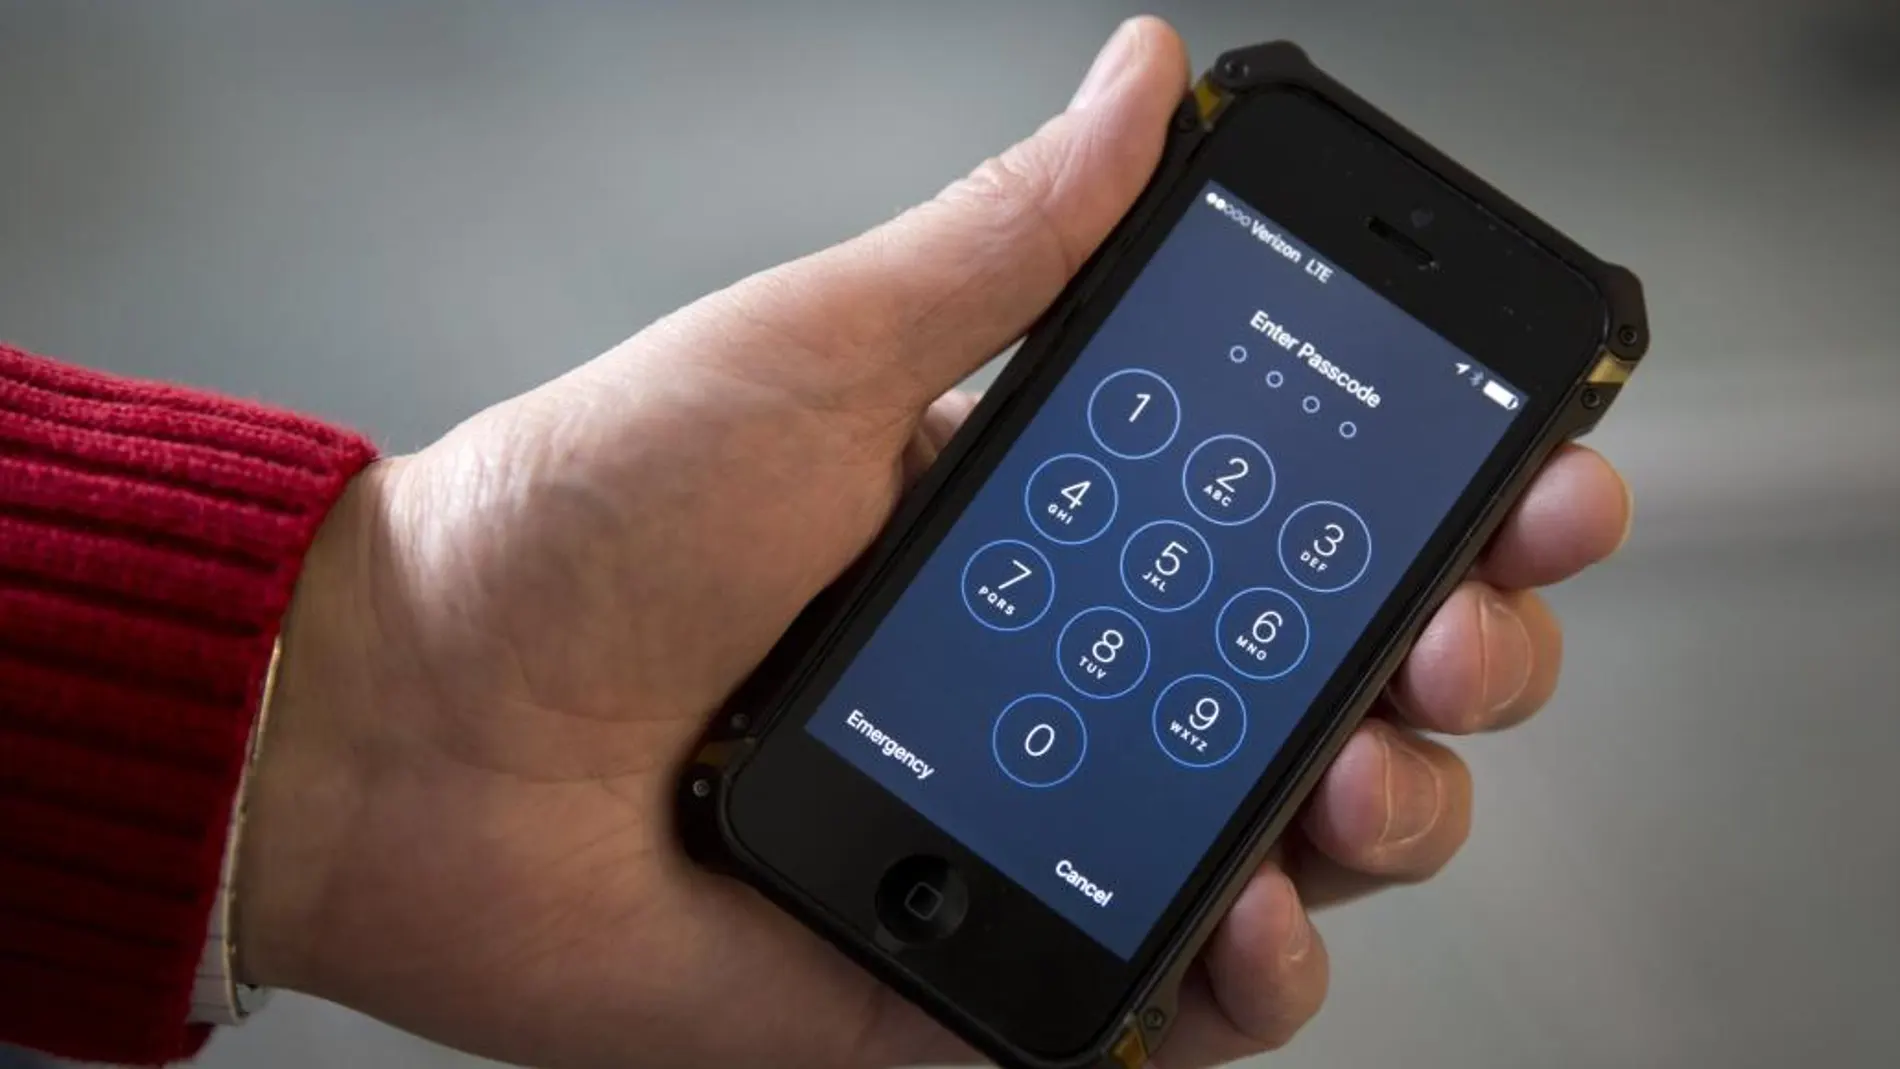 El FBI decide no compartir el mecanismo de desbloqueo del iPhone